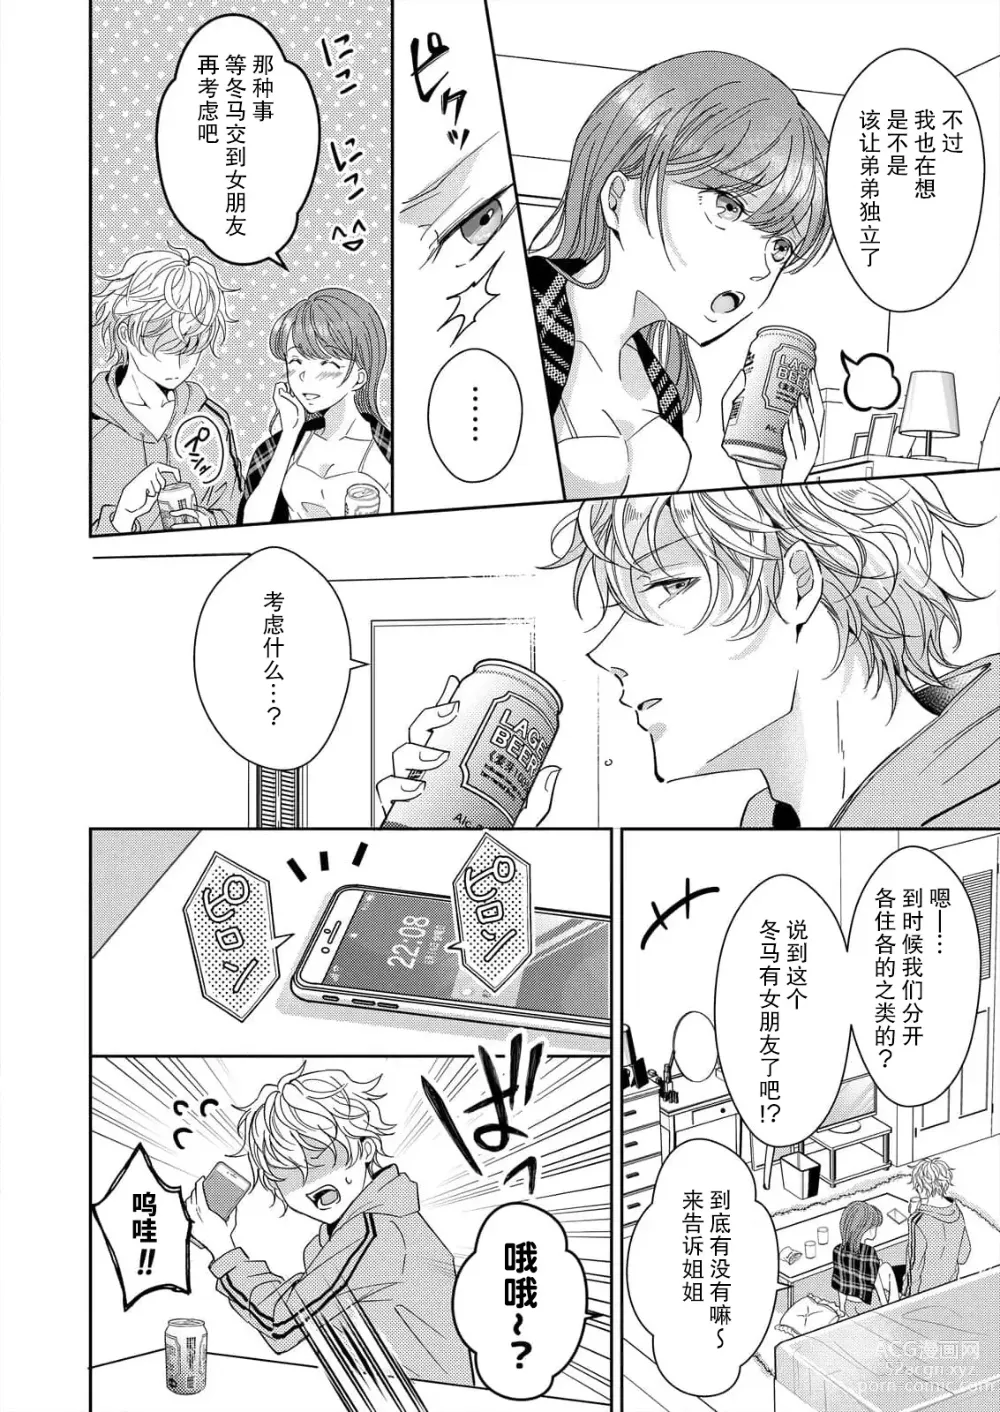 Page 6 of manga 姐弟时间结束~要做一些不能做的事情吗？1-2